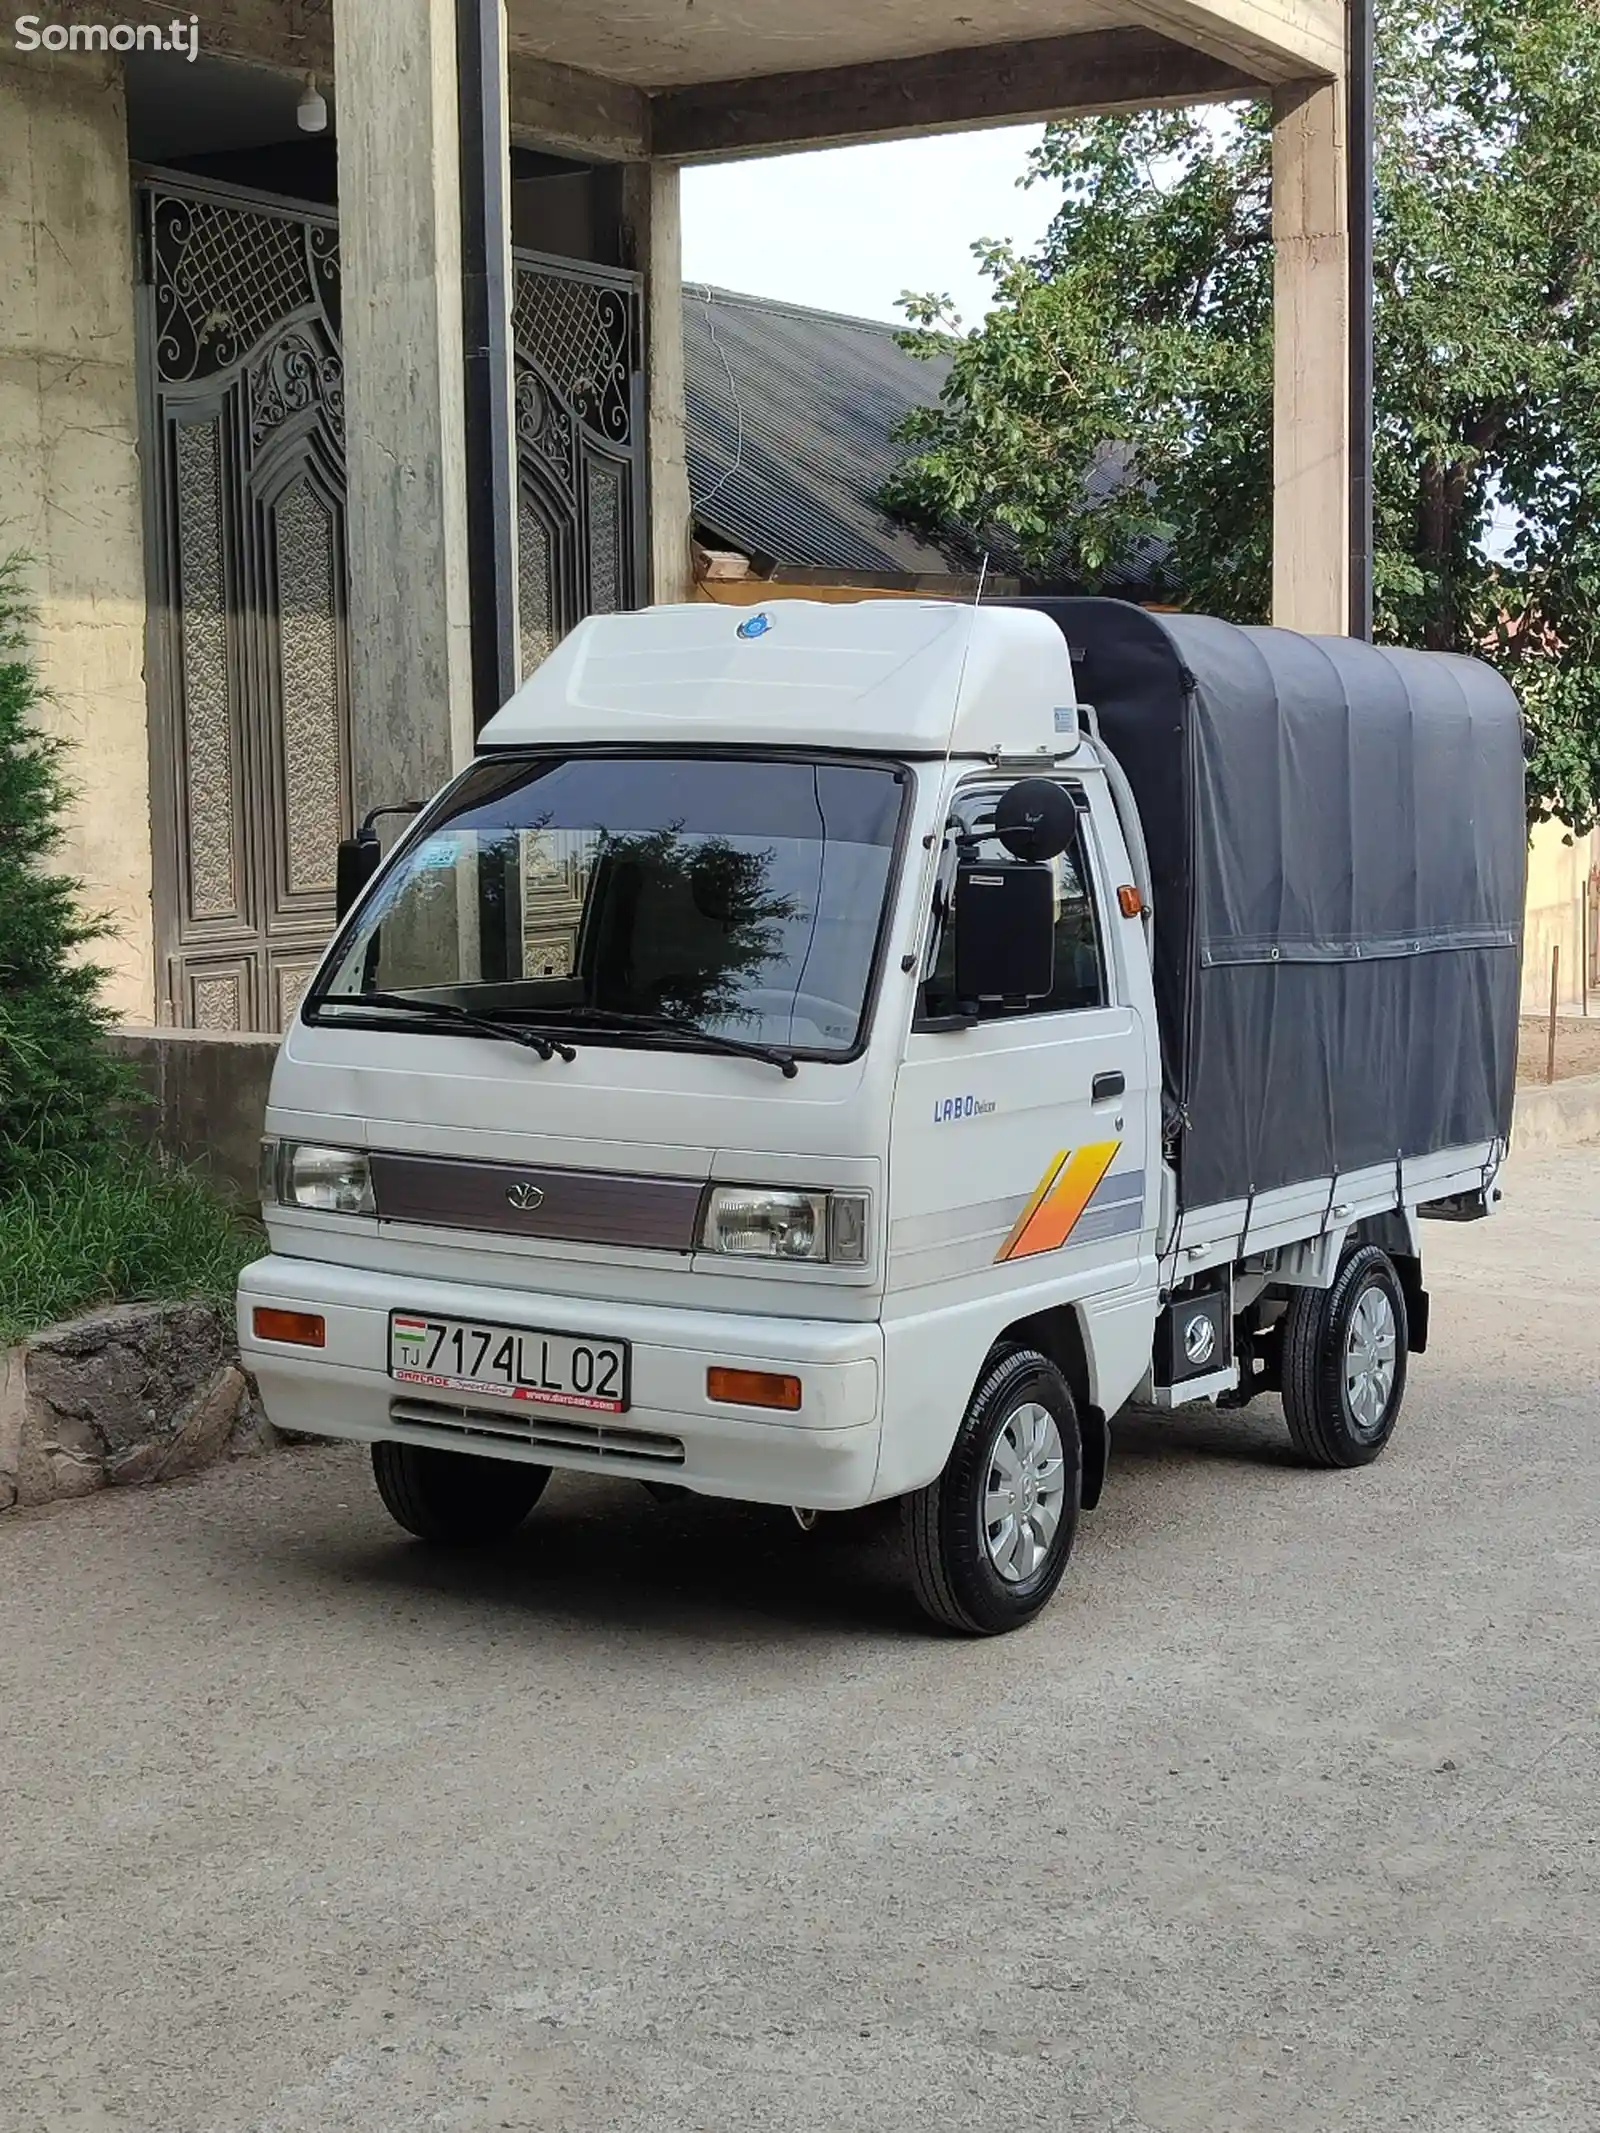 Бортовой автомобиль Daewoo Labo, 2013-4